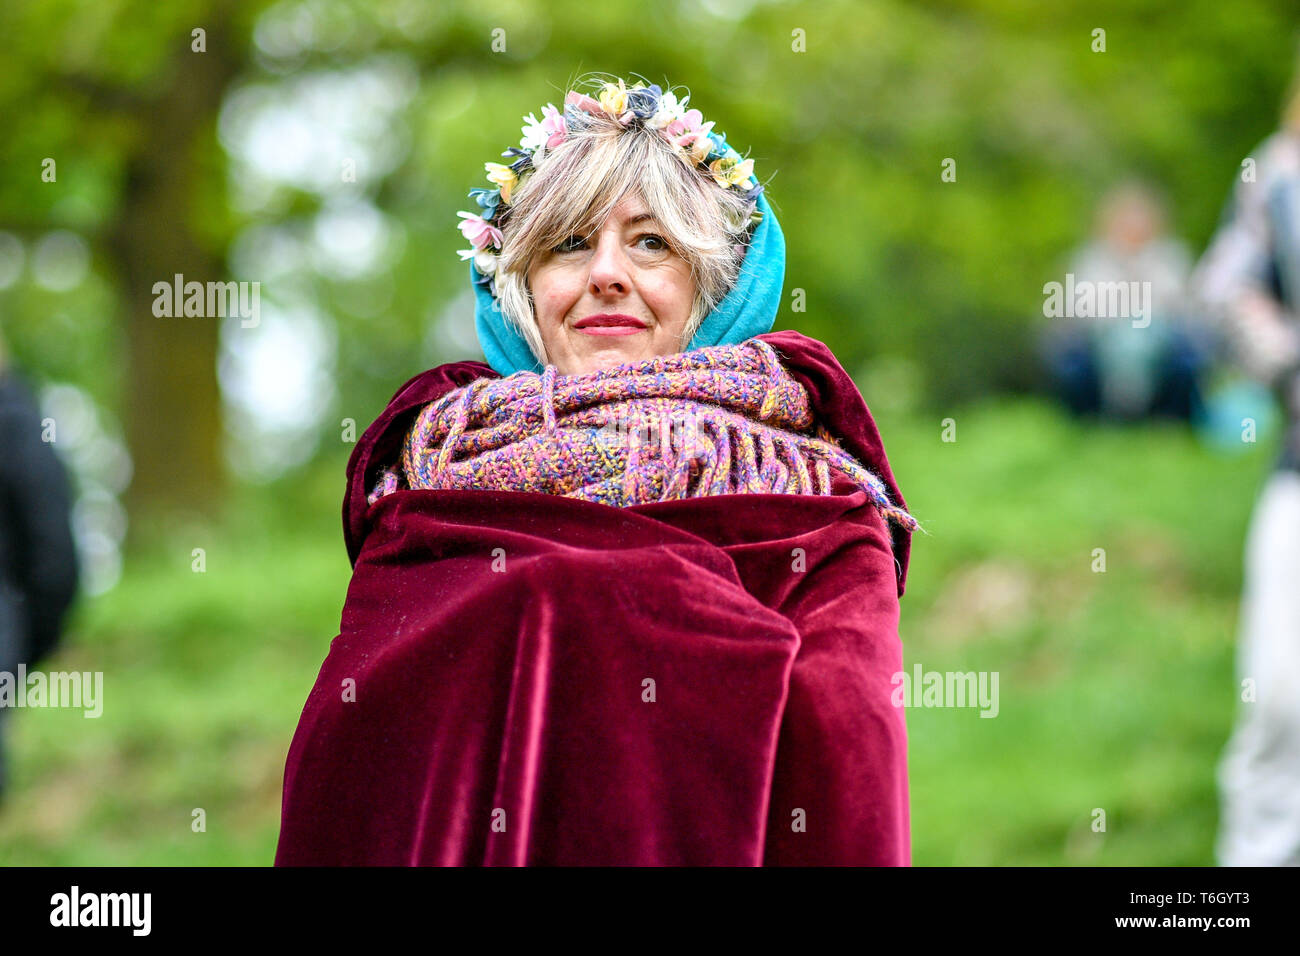 Une femme s'enroule dans sa robe pendant la célébration Beltane à Glastonbury Chalice Well, où les gens se rassemblent pour observer une interprétation moderne de l'antique fertilité païenne celtique sacre du printemps. Banque D'Images